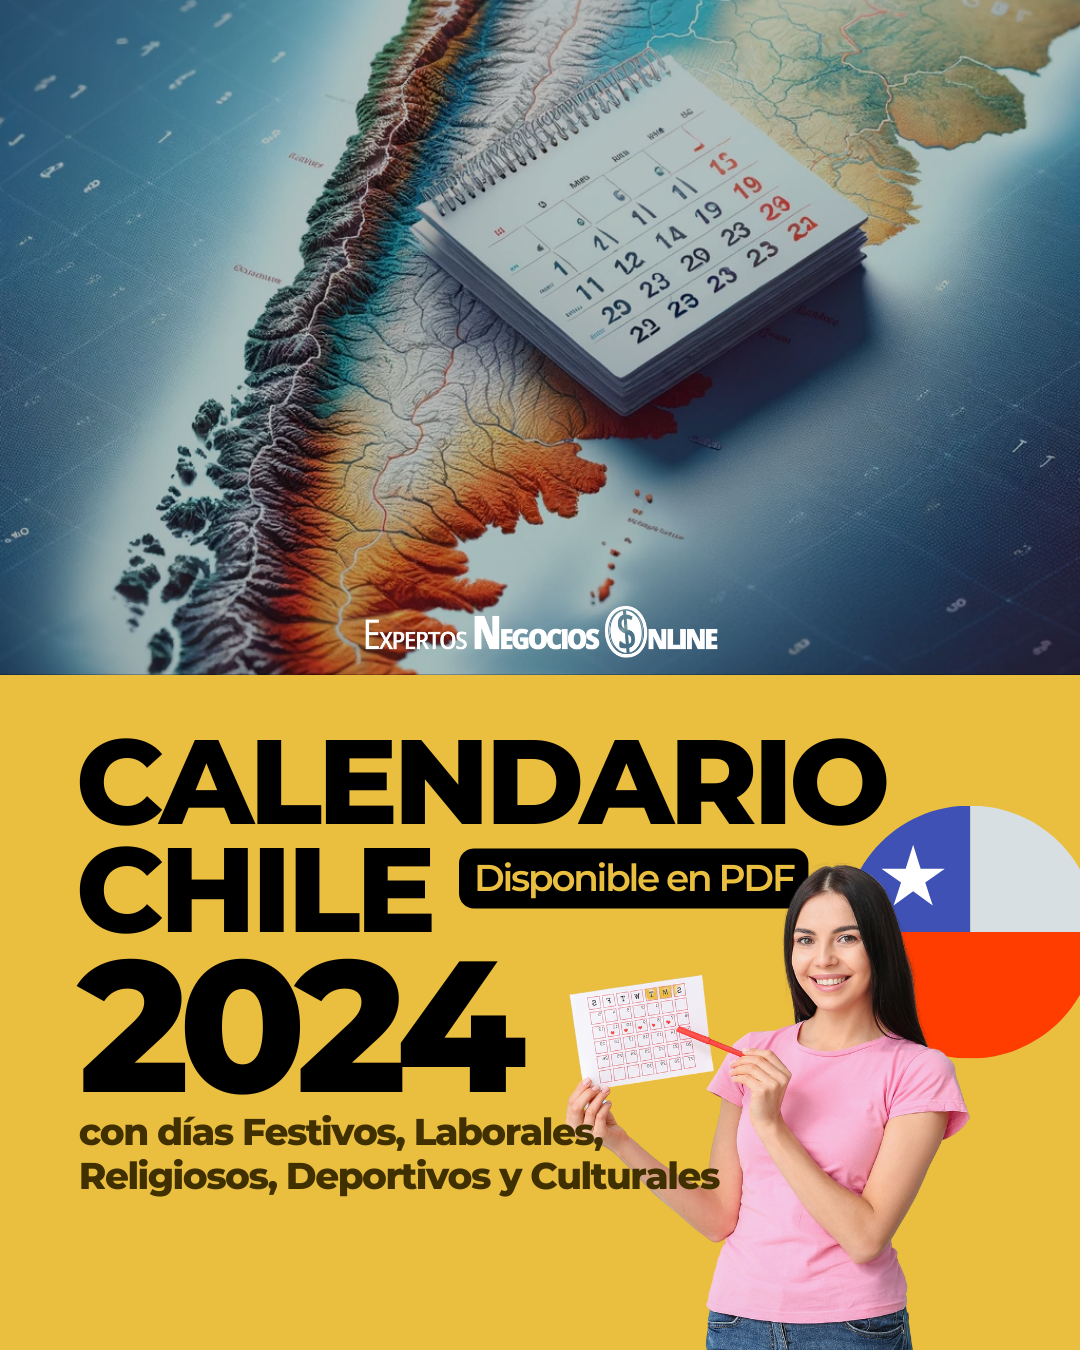 Calendario Comercial 2024 Chile con Feriados | PDF con fechas de descuentos e importantes